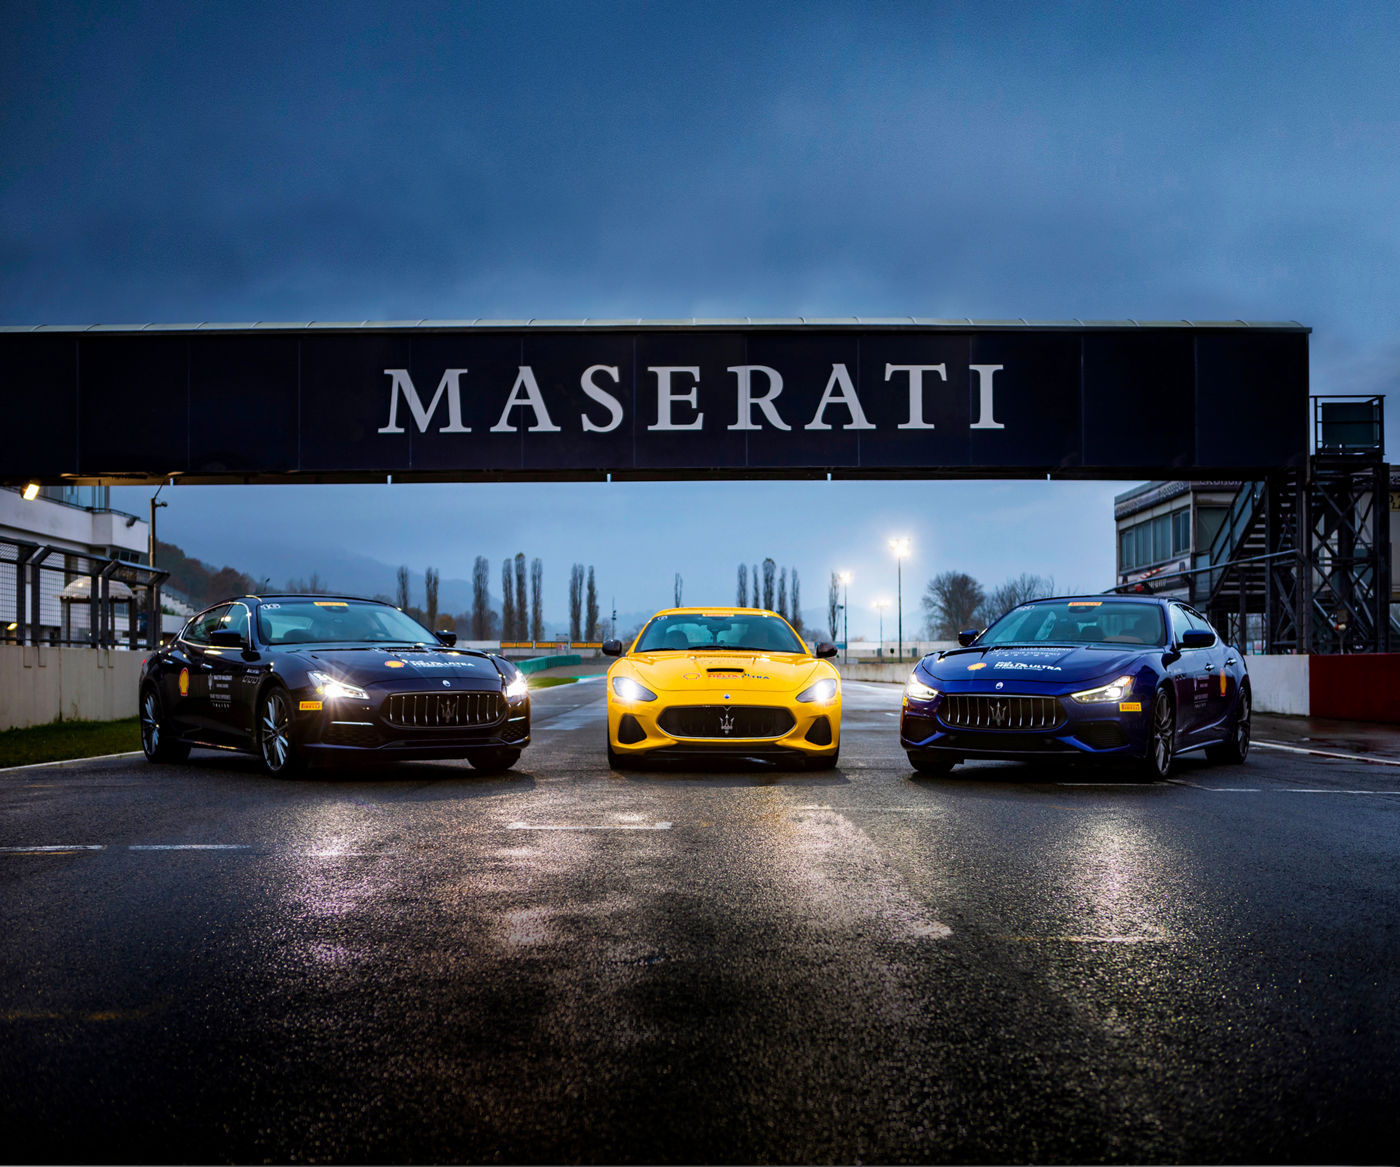 3 modelli Maserati sotto la linea d'arrivo del Master Maserati a Varano 